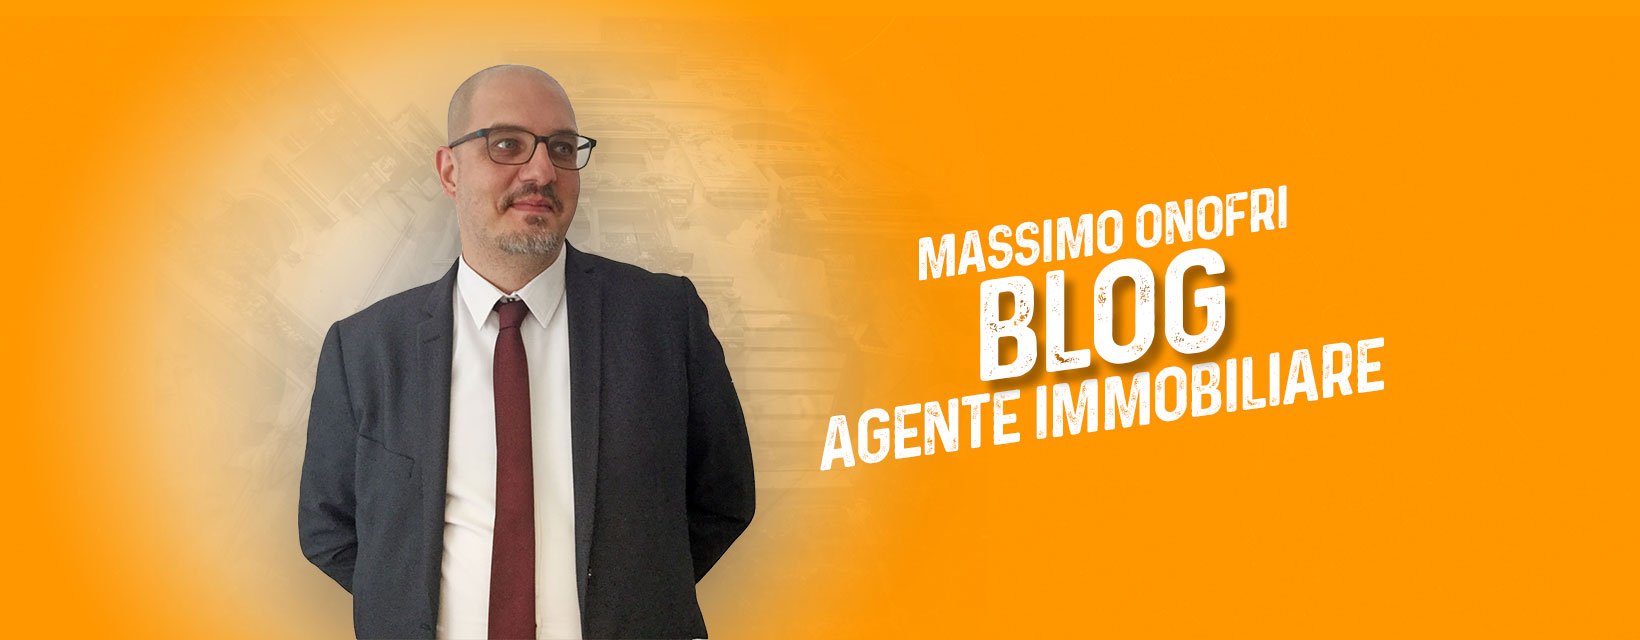 Blog Massimo Onofri